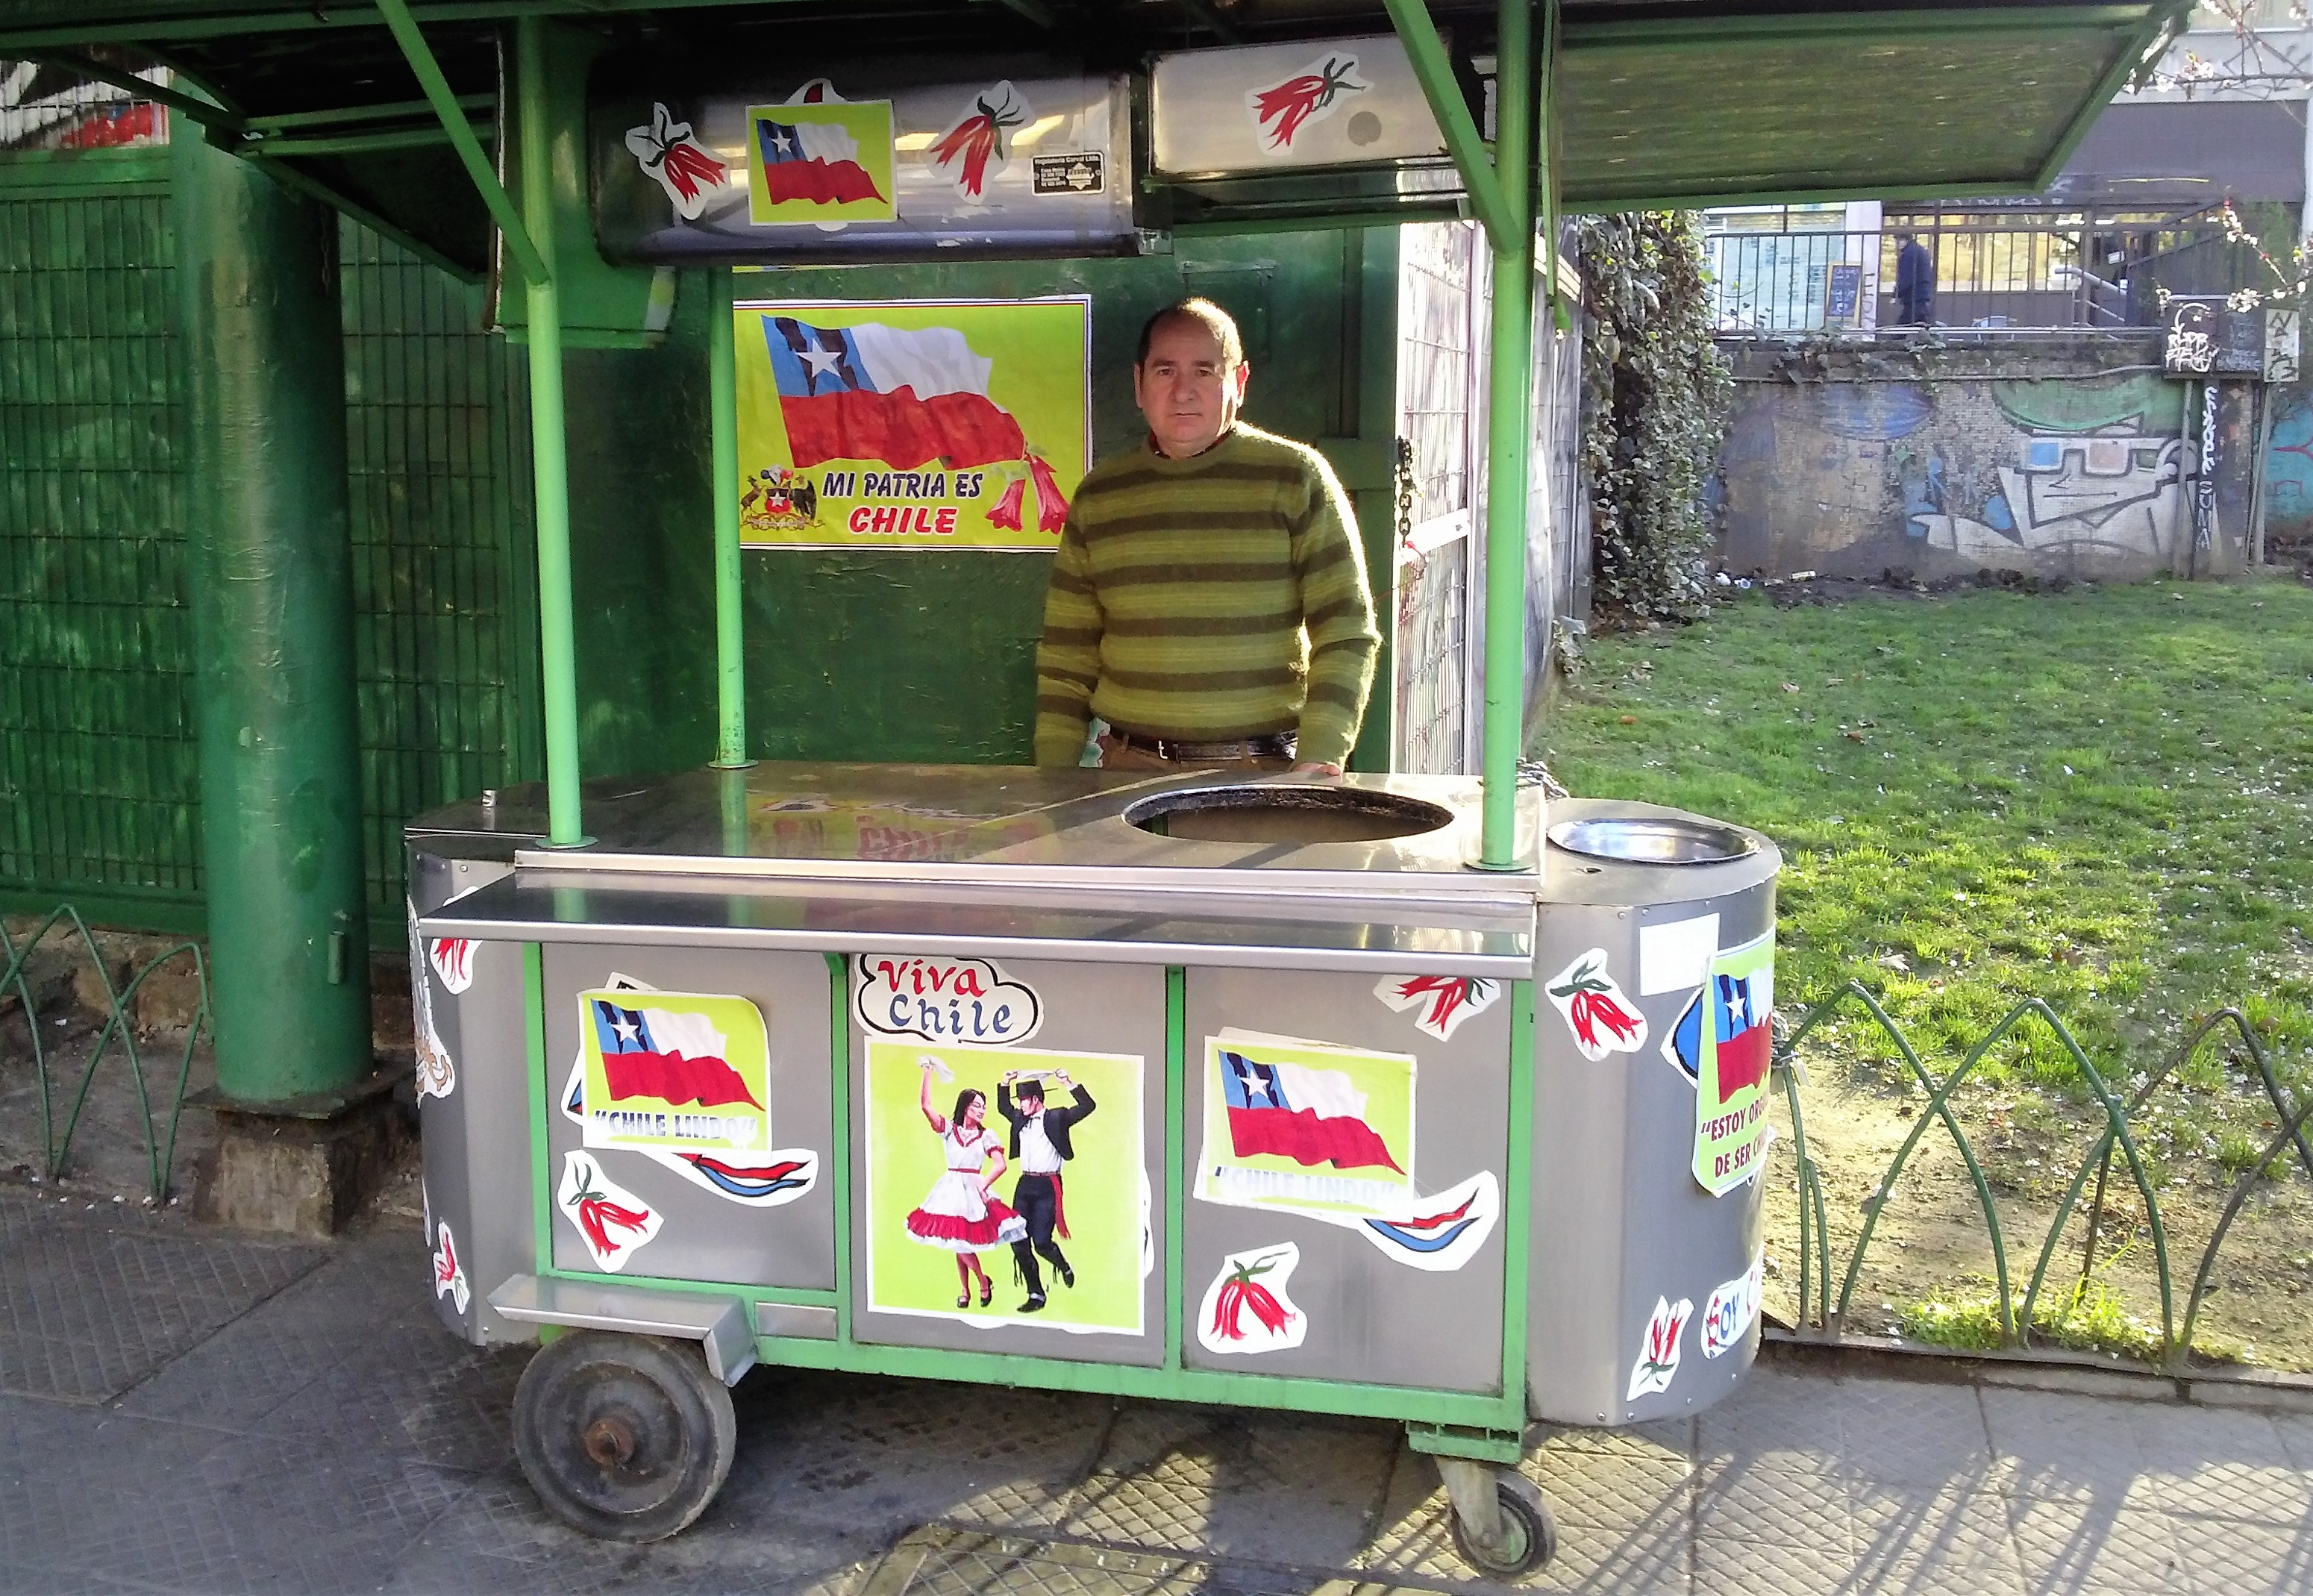 Popular vendedor de sopaipillas recupera uno de sus carros requisados por municipio de Santiago